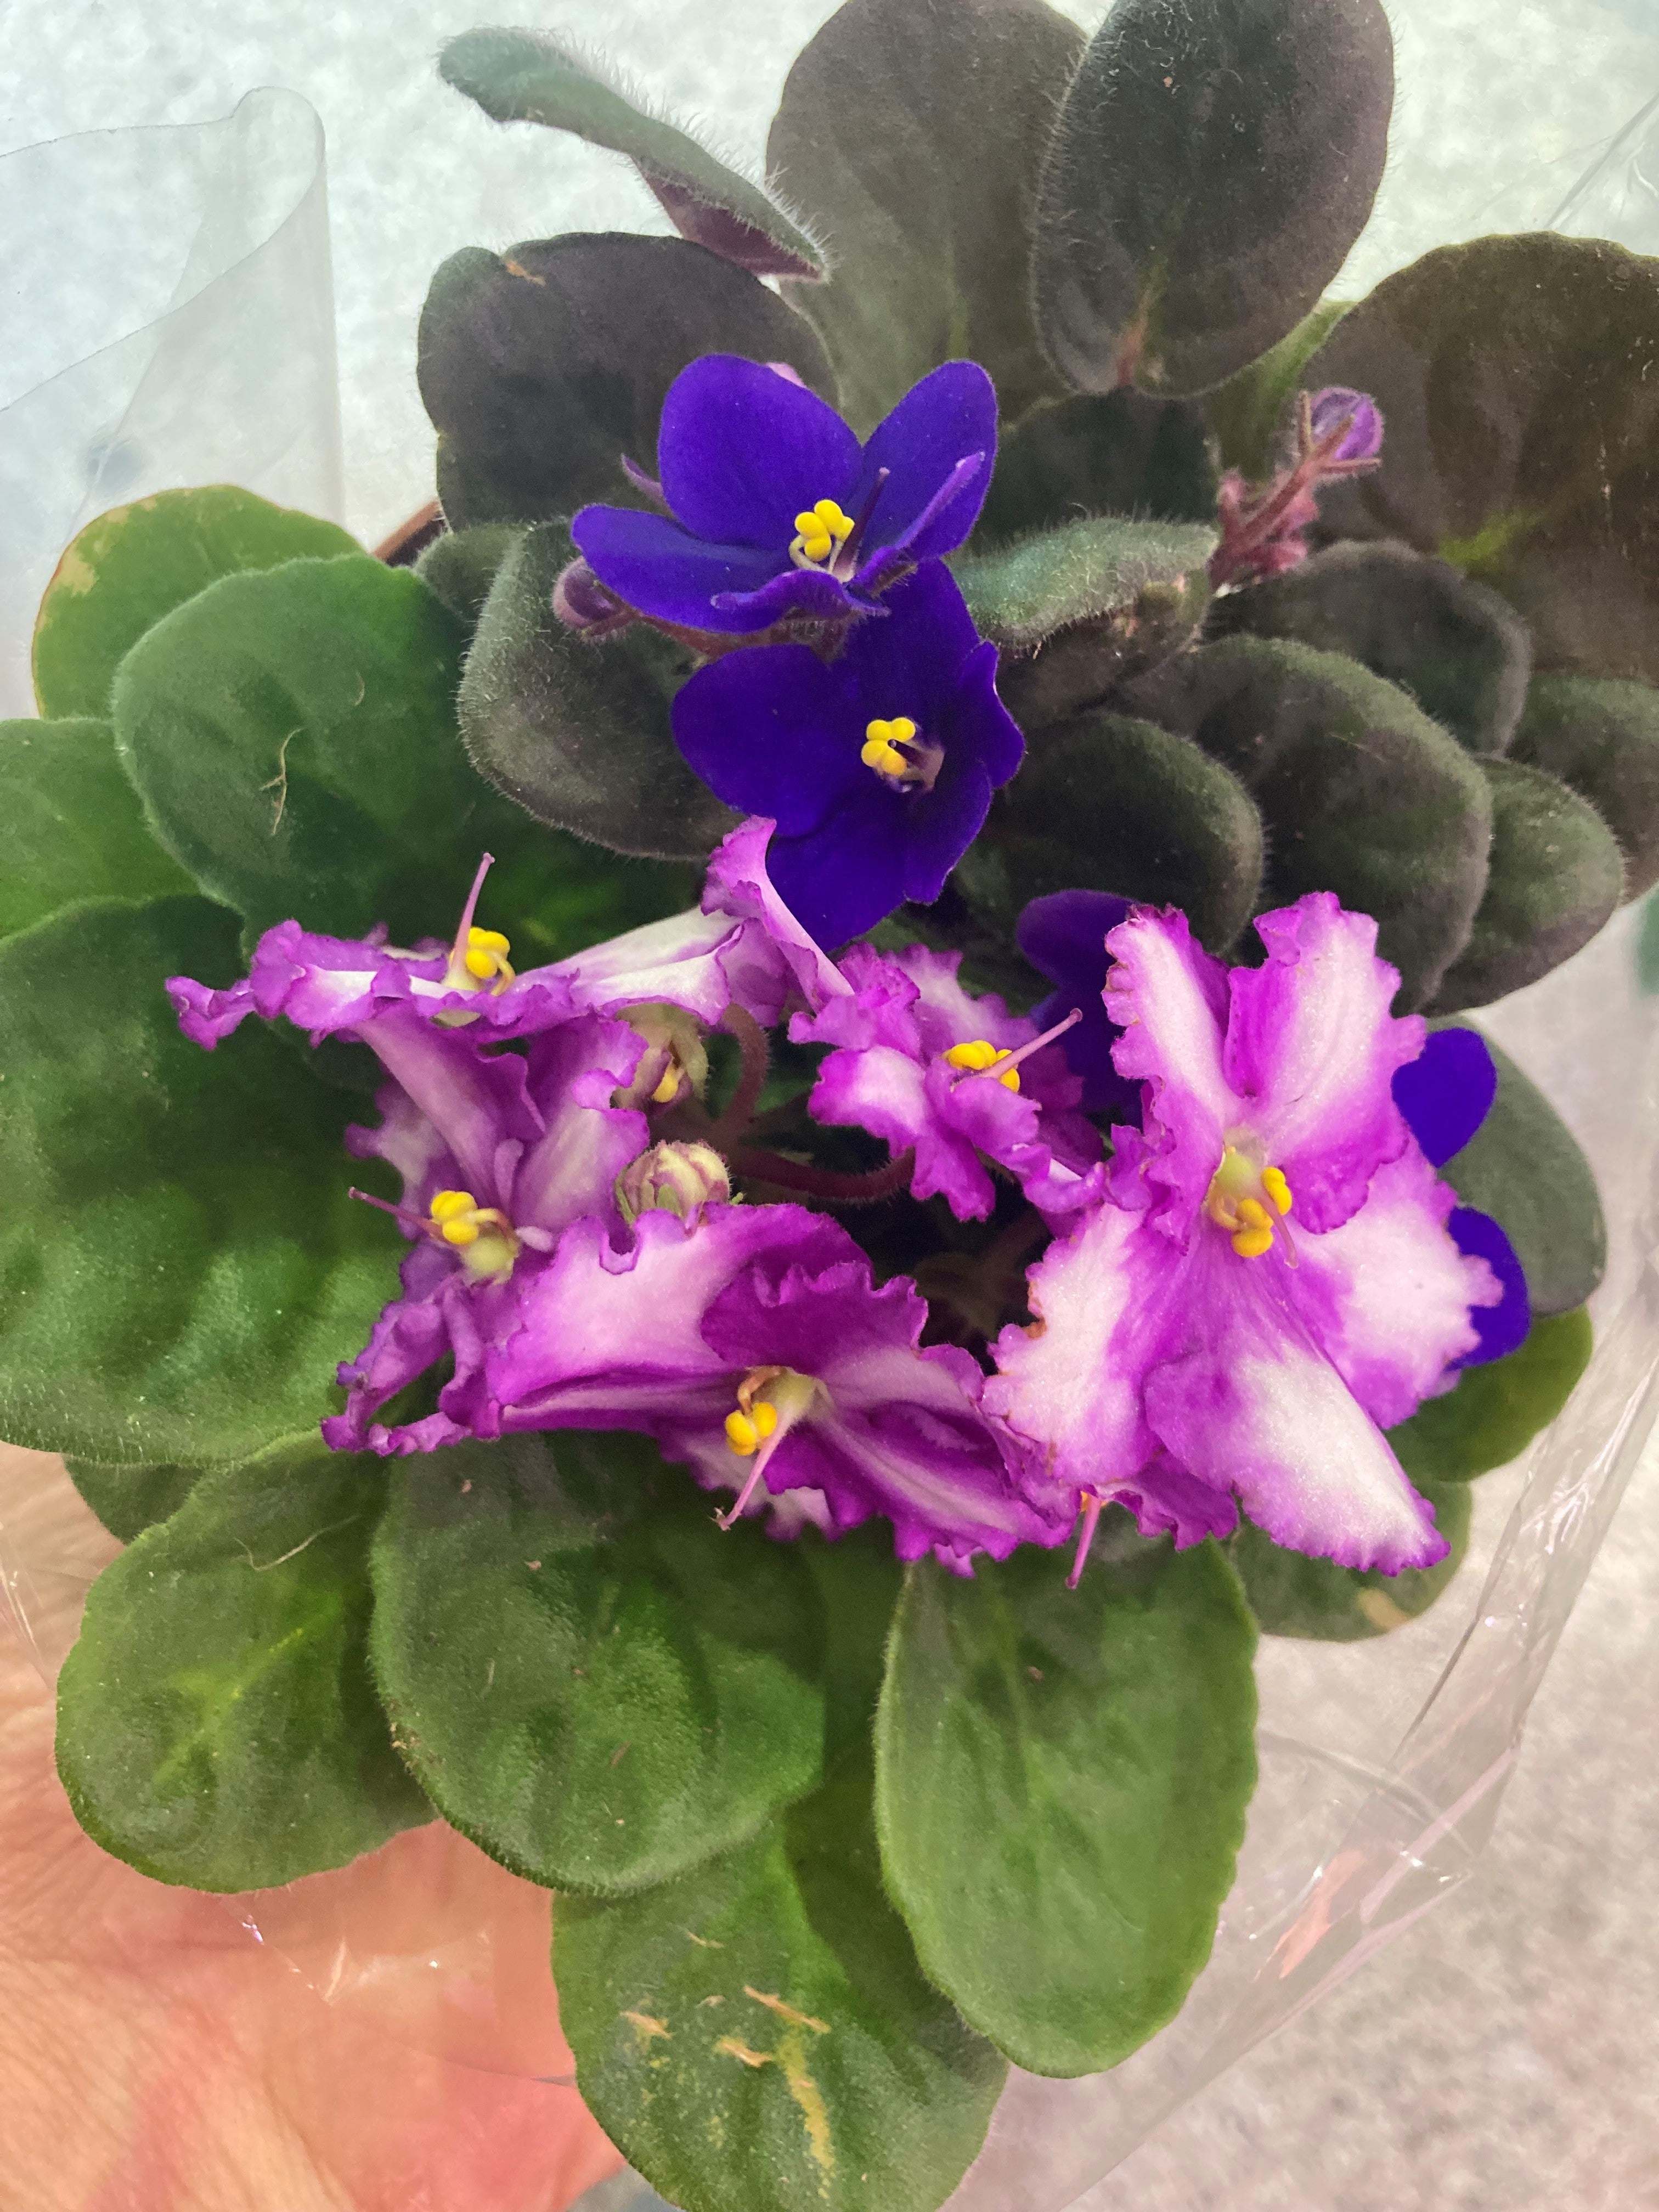 Saintpaulia - Violettes Africaines - African violet – Faucher Botanix